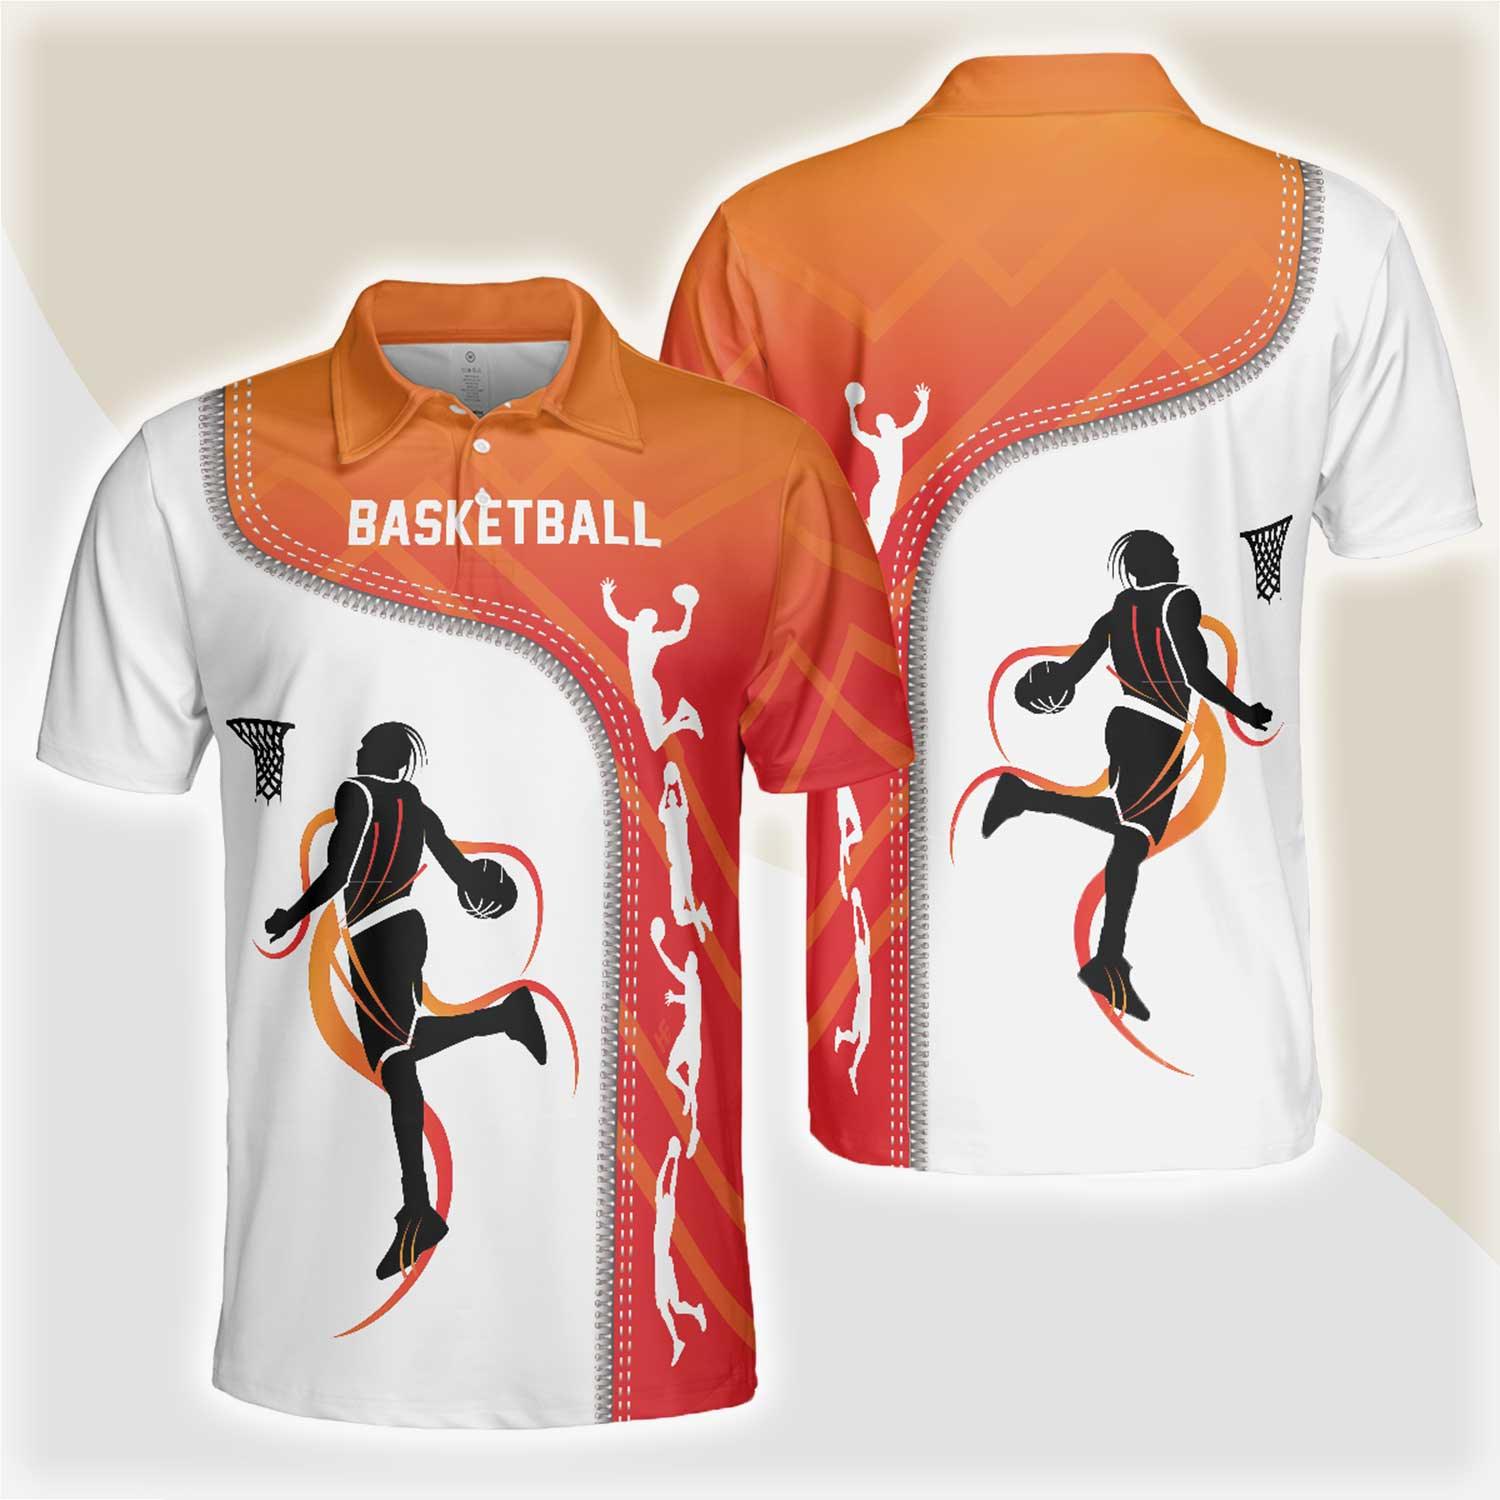 Basketball Men Polo Shirt, Basketball Is Life, White Basketball Themed Shirt For Adults - Gift For Men, Basketball Lovers, Basketball Players - Amzanimalsgift